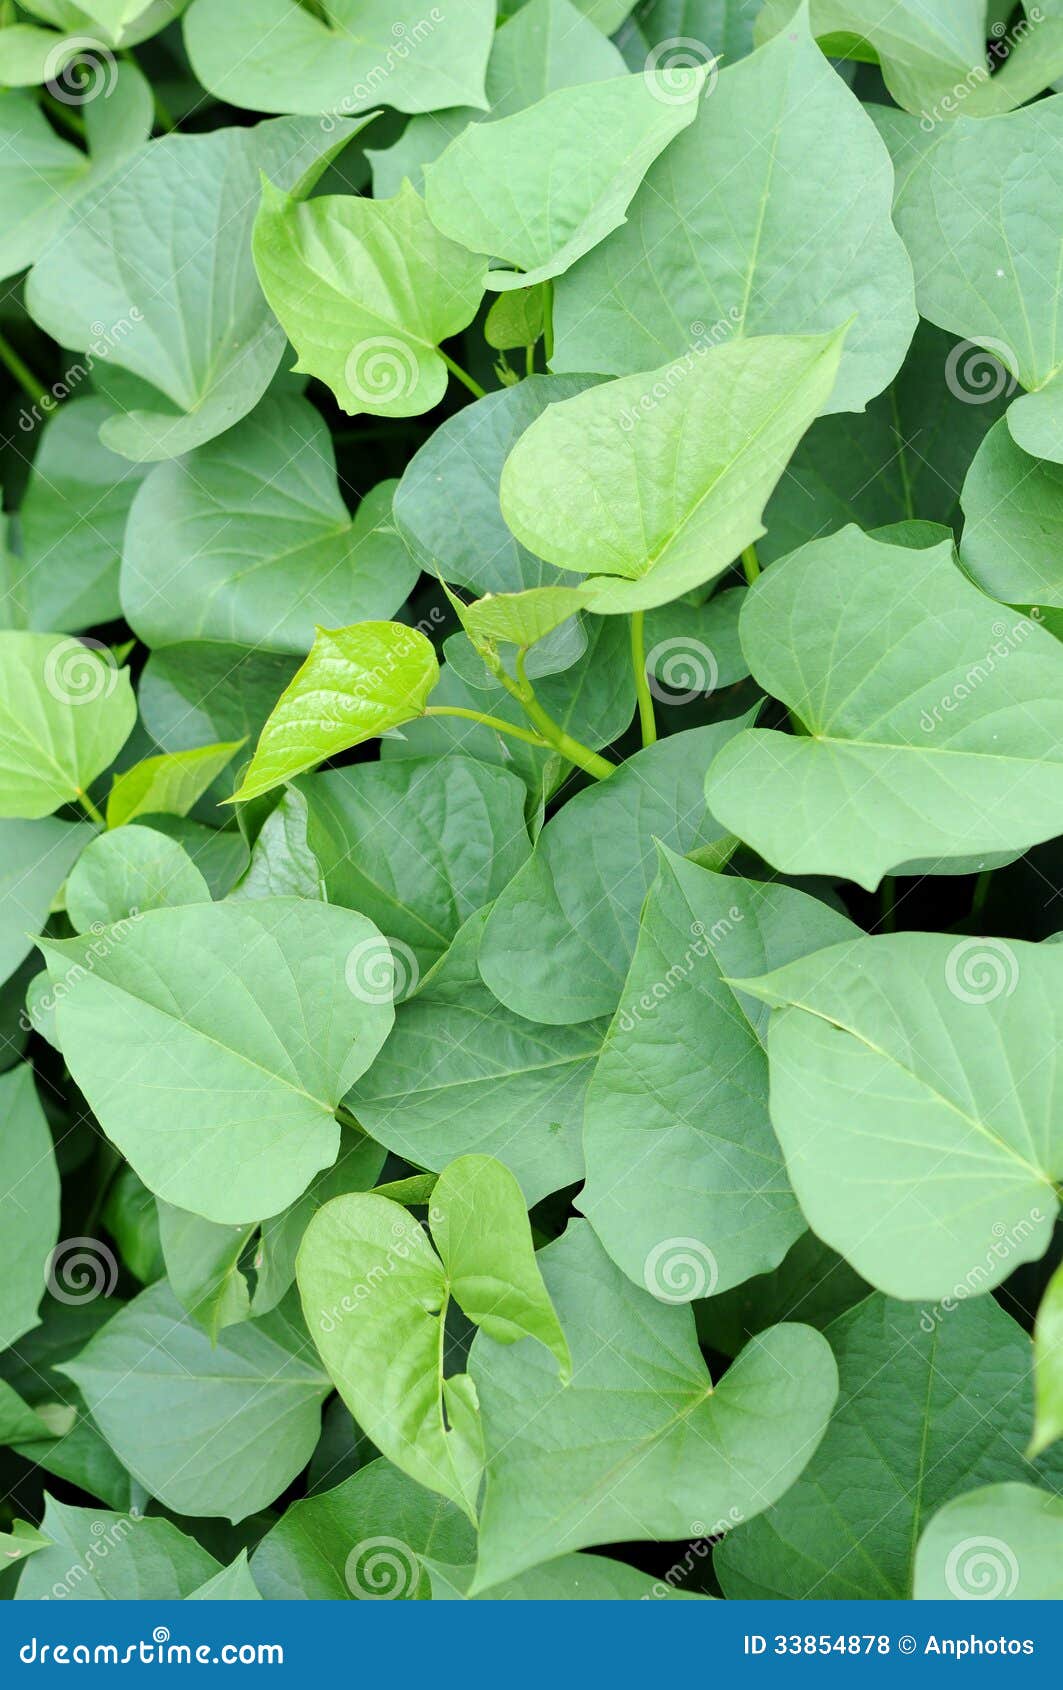 土豆叶子 库存图片. 图片 包括有 植被, 绿色, 滋补, 空白, 健康, 蔬菜, 甜甜, 增长, 工厂 - 45910869